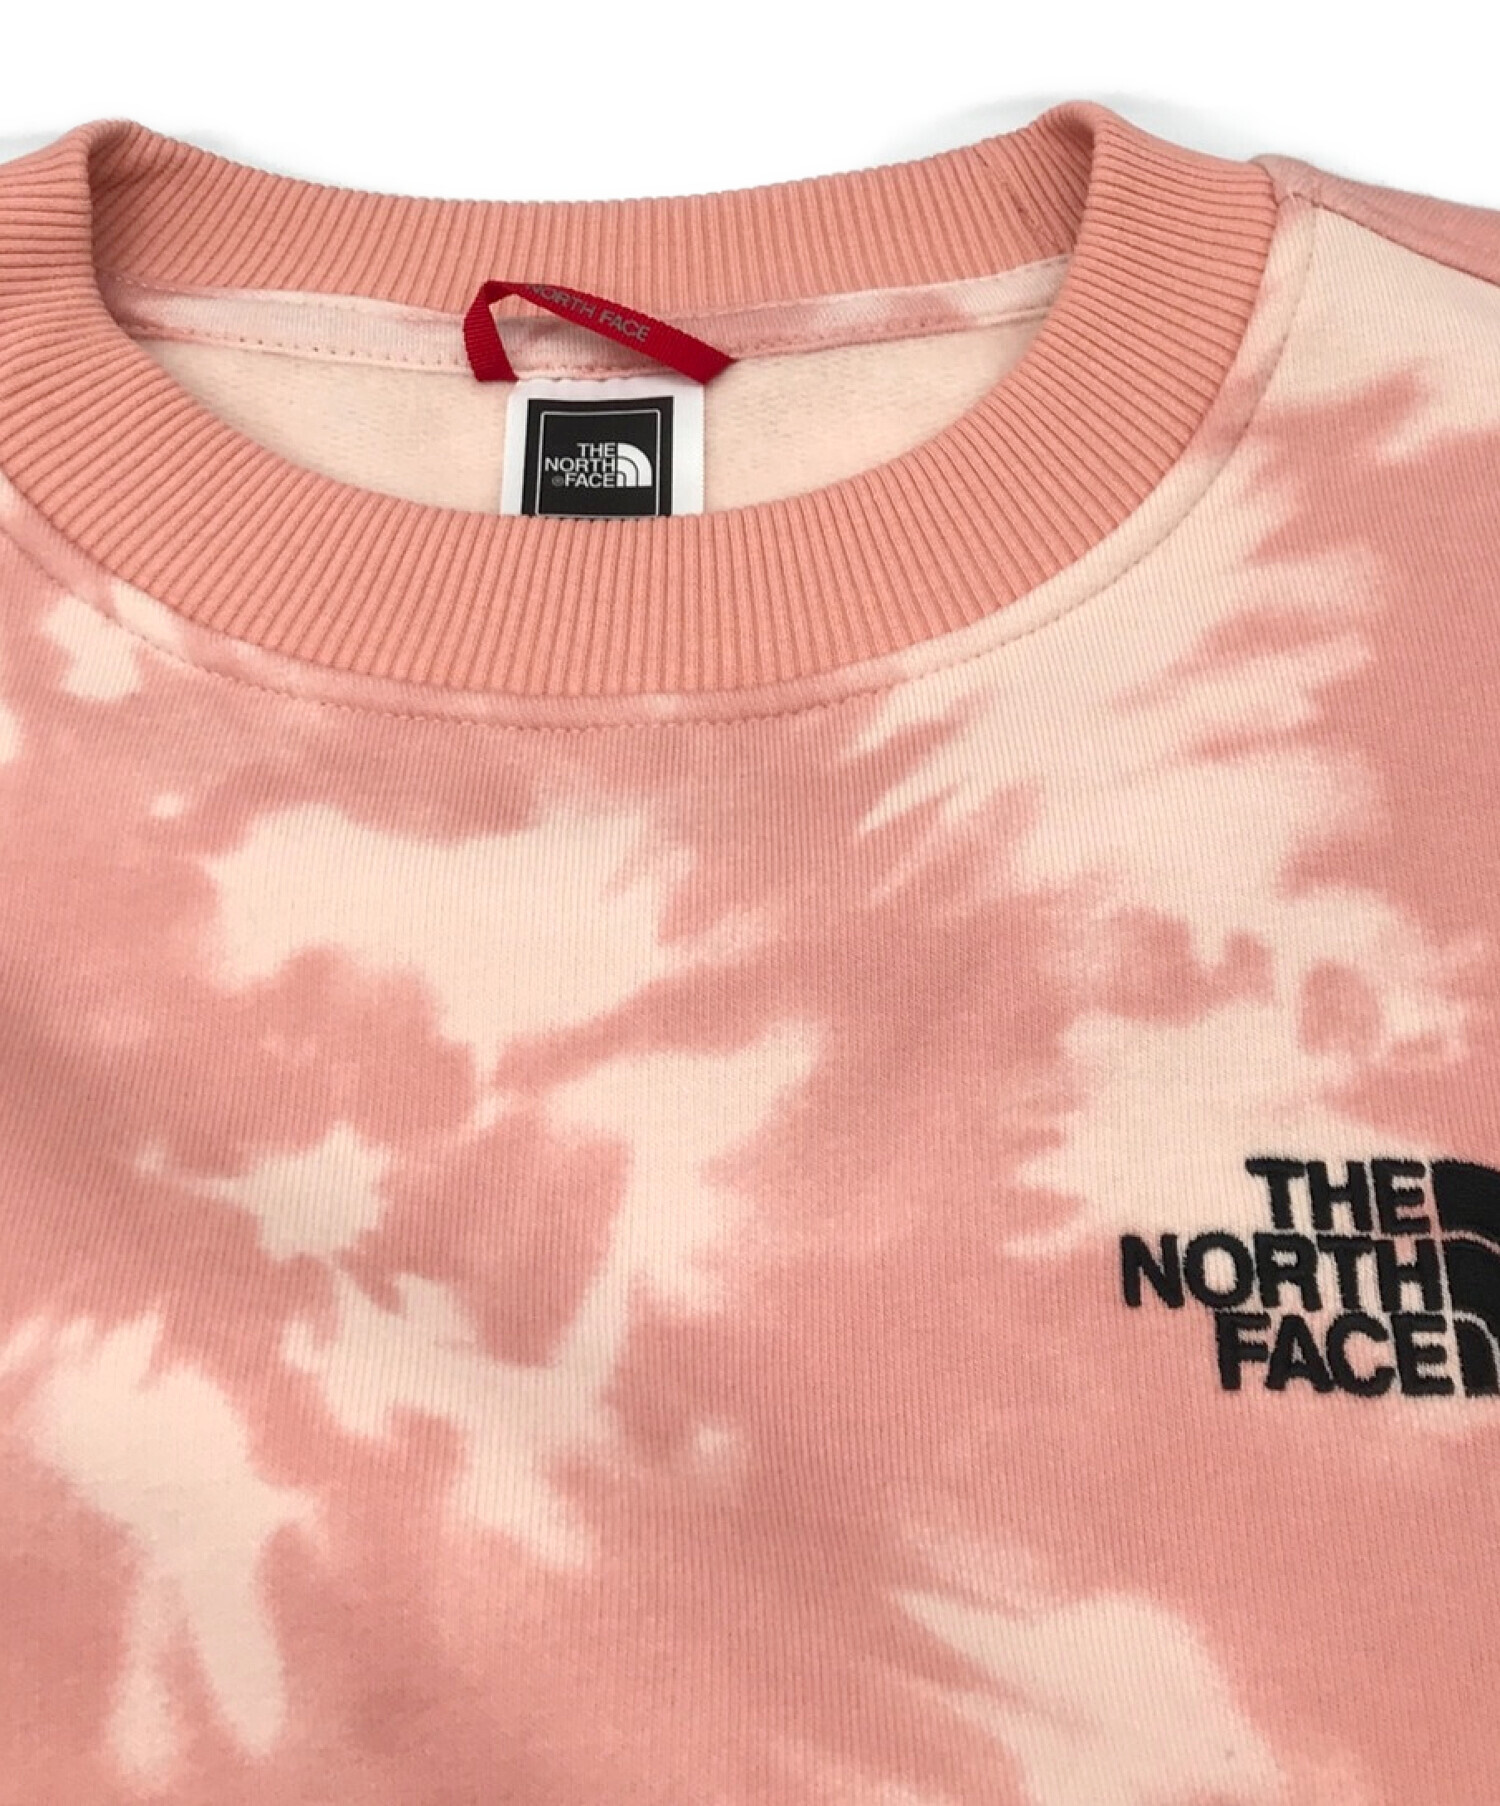 THE NORTH FACE (ザ ノース フェイス) タイダイセットアップ ピンク サイズ:XS